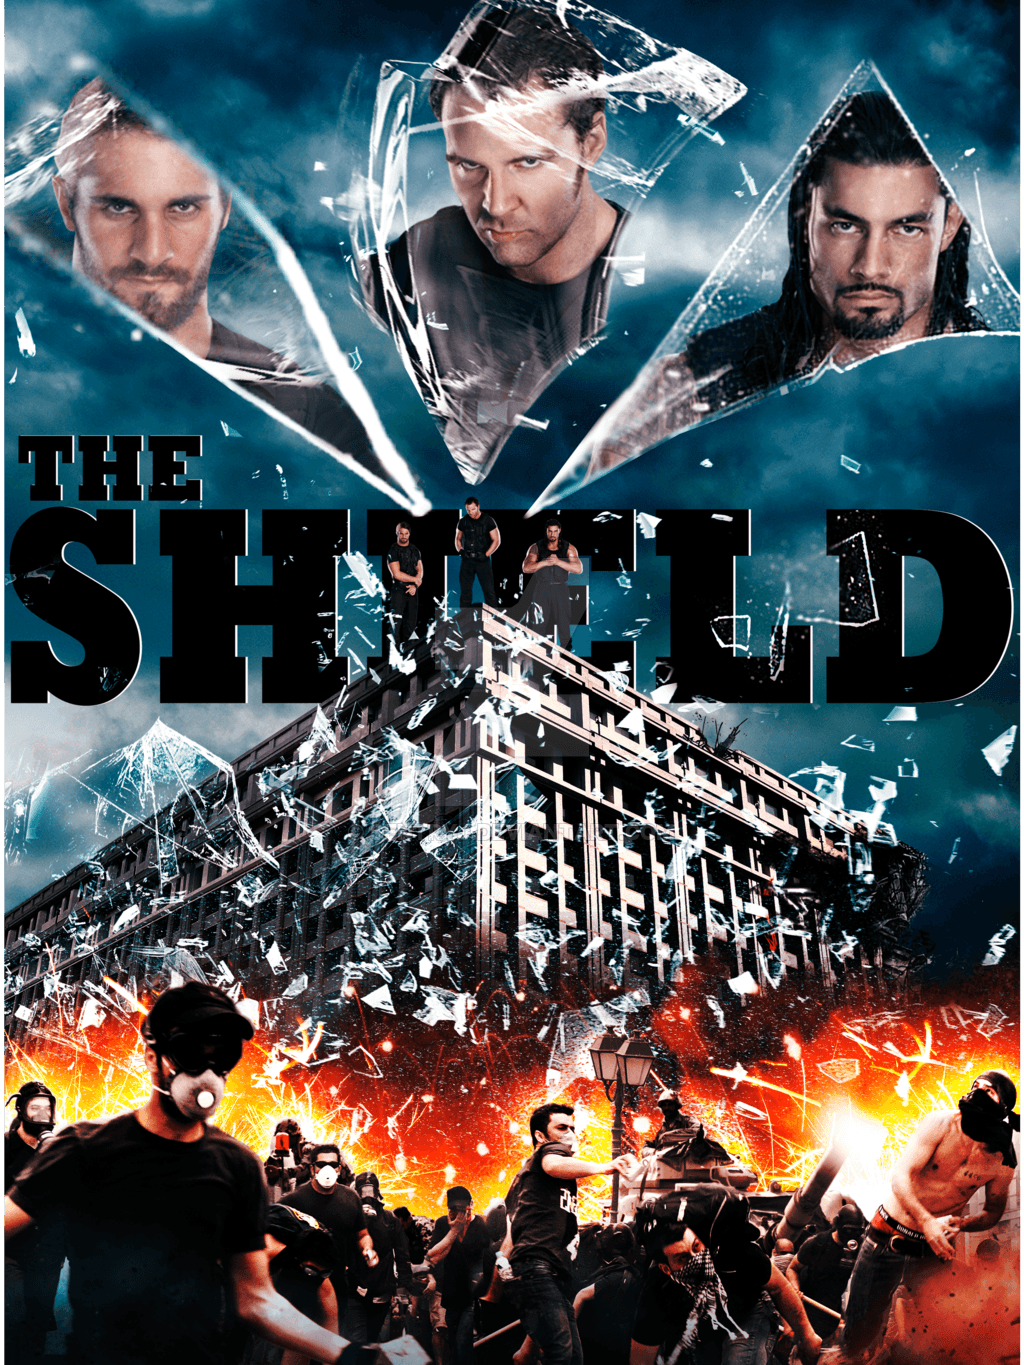 WWE Believe in The Shield Wallpaper